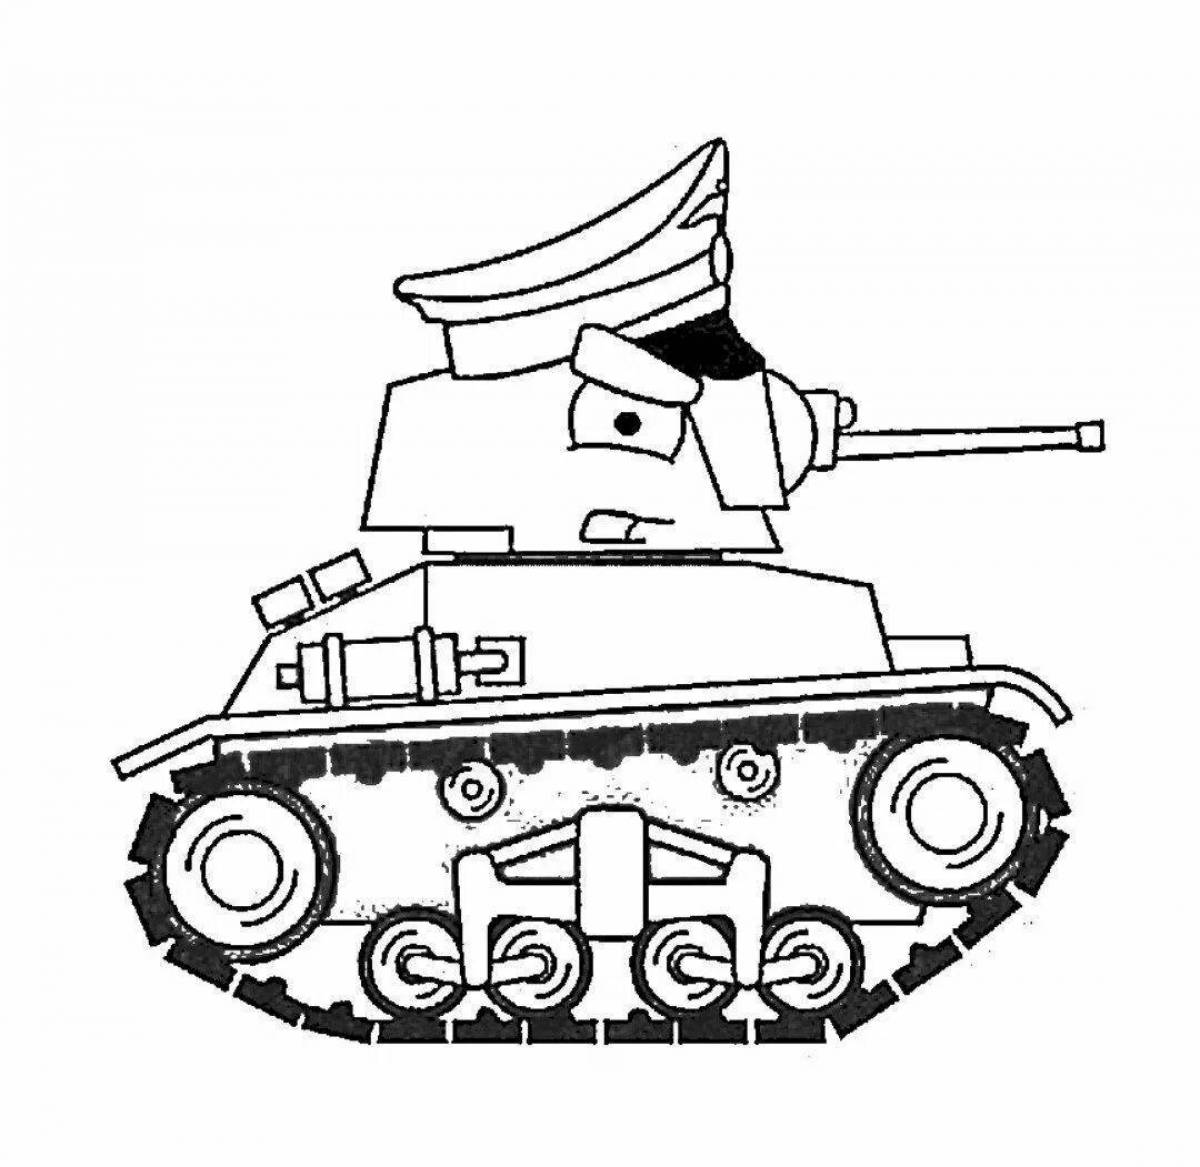 Привлекательный танк ms 1 раскраска